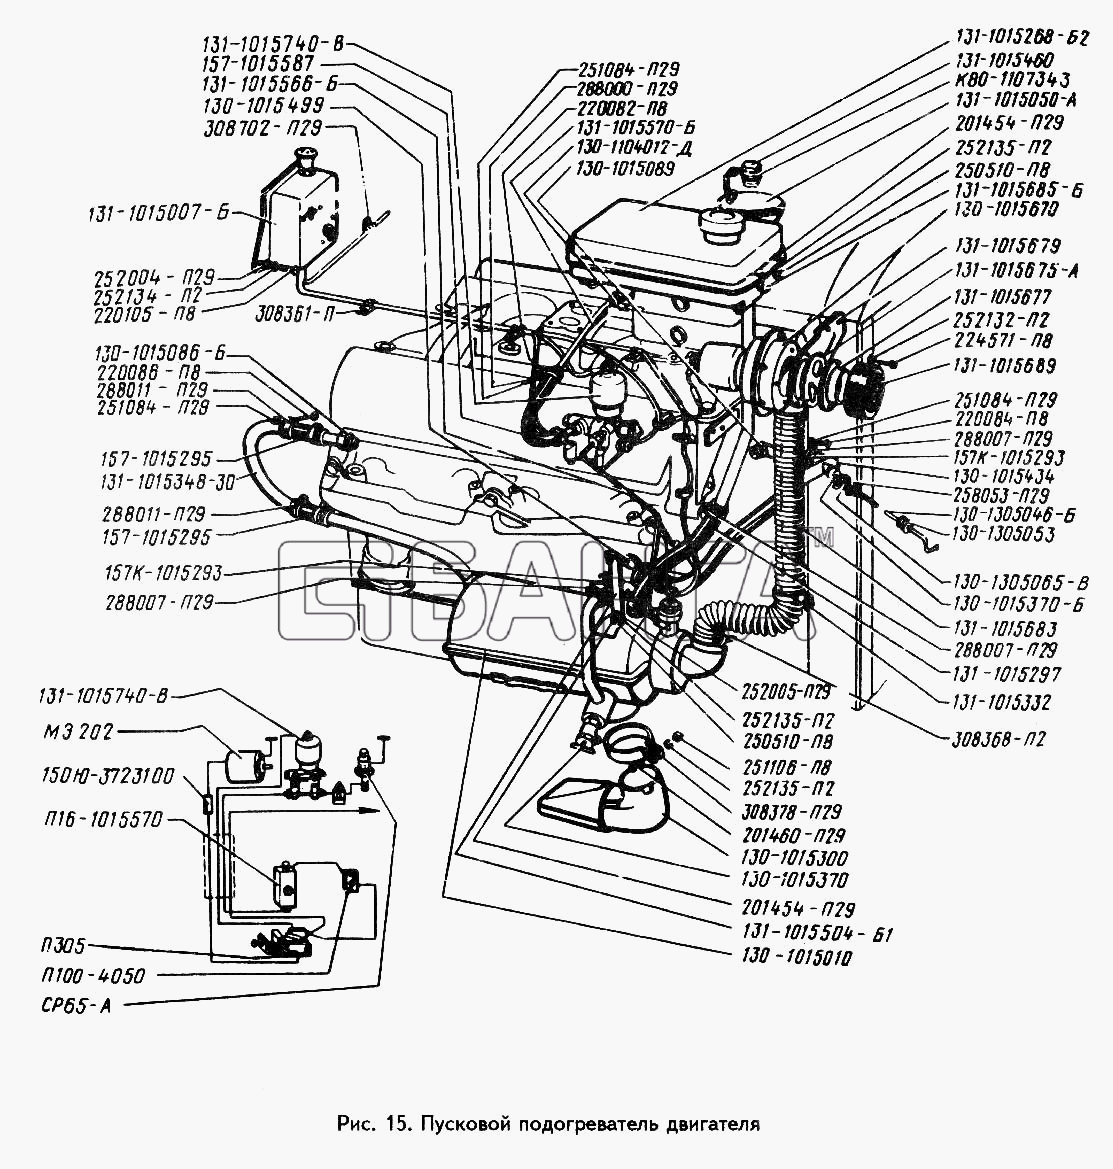 ЗИЛ ЗИЛ 442160 Схема Пусковой подогреватель двигателя banga.ua